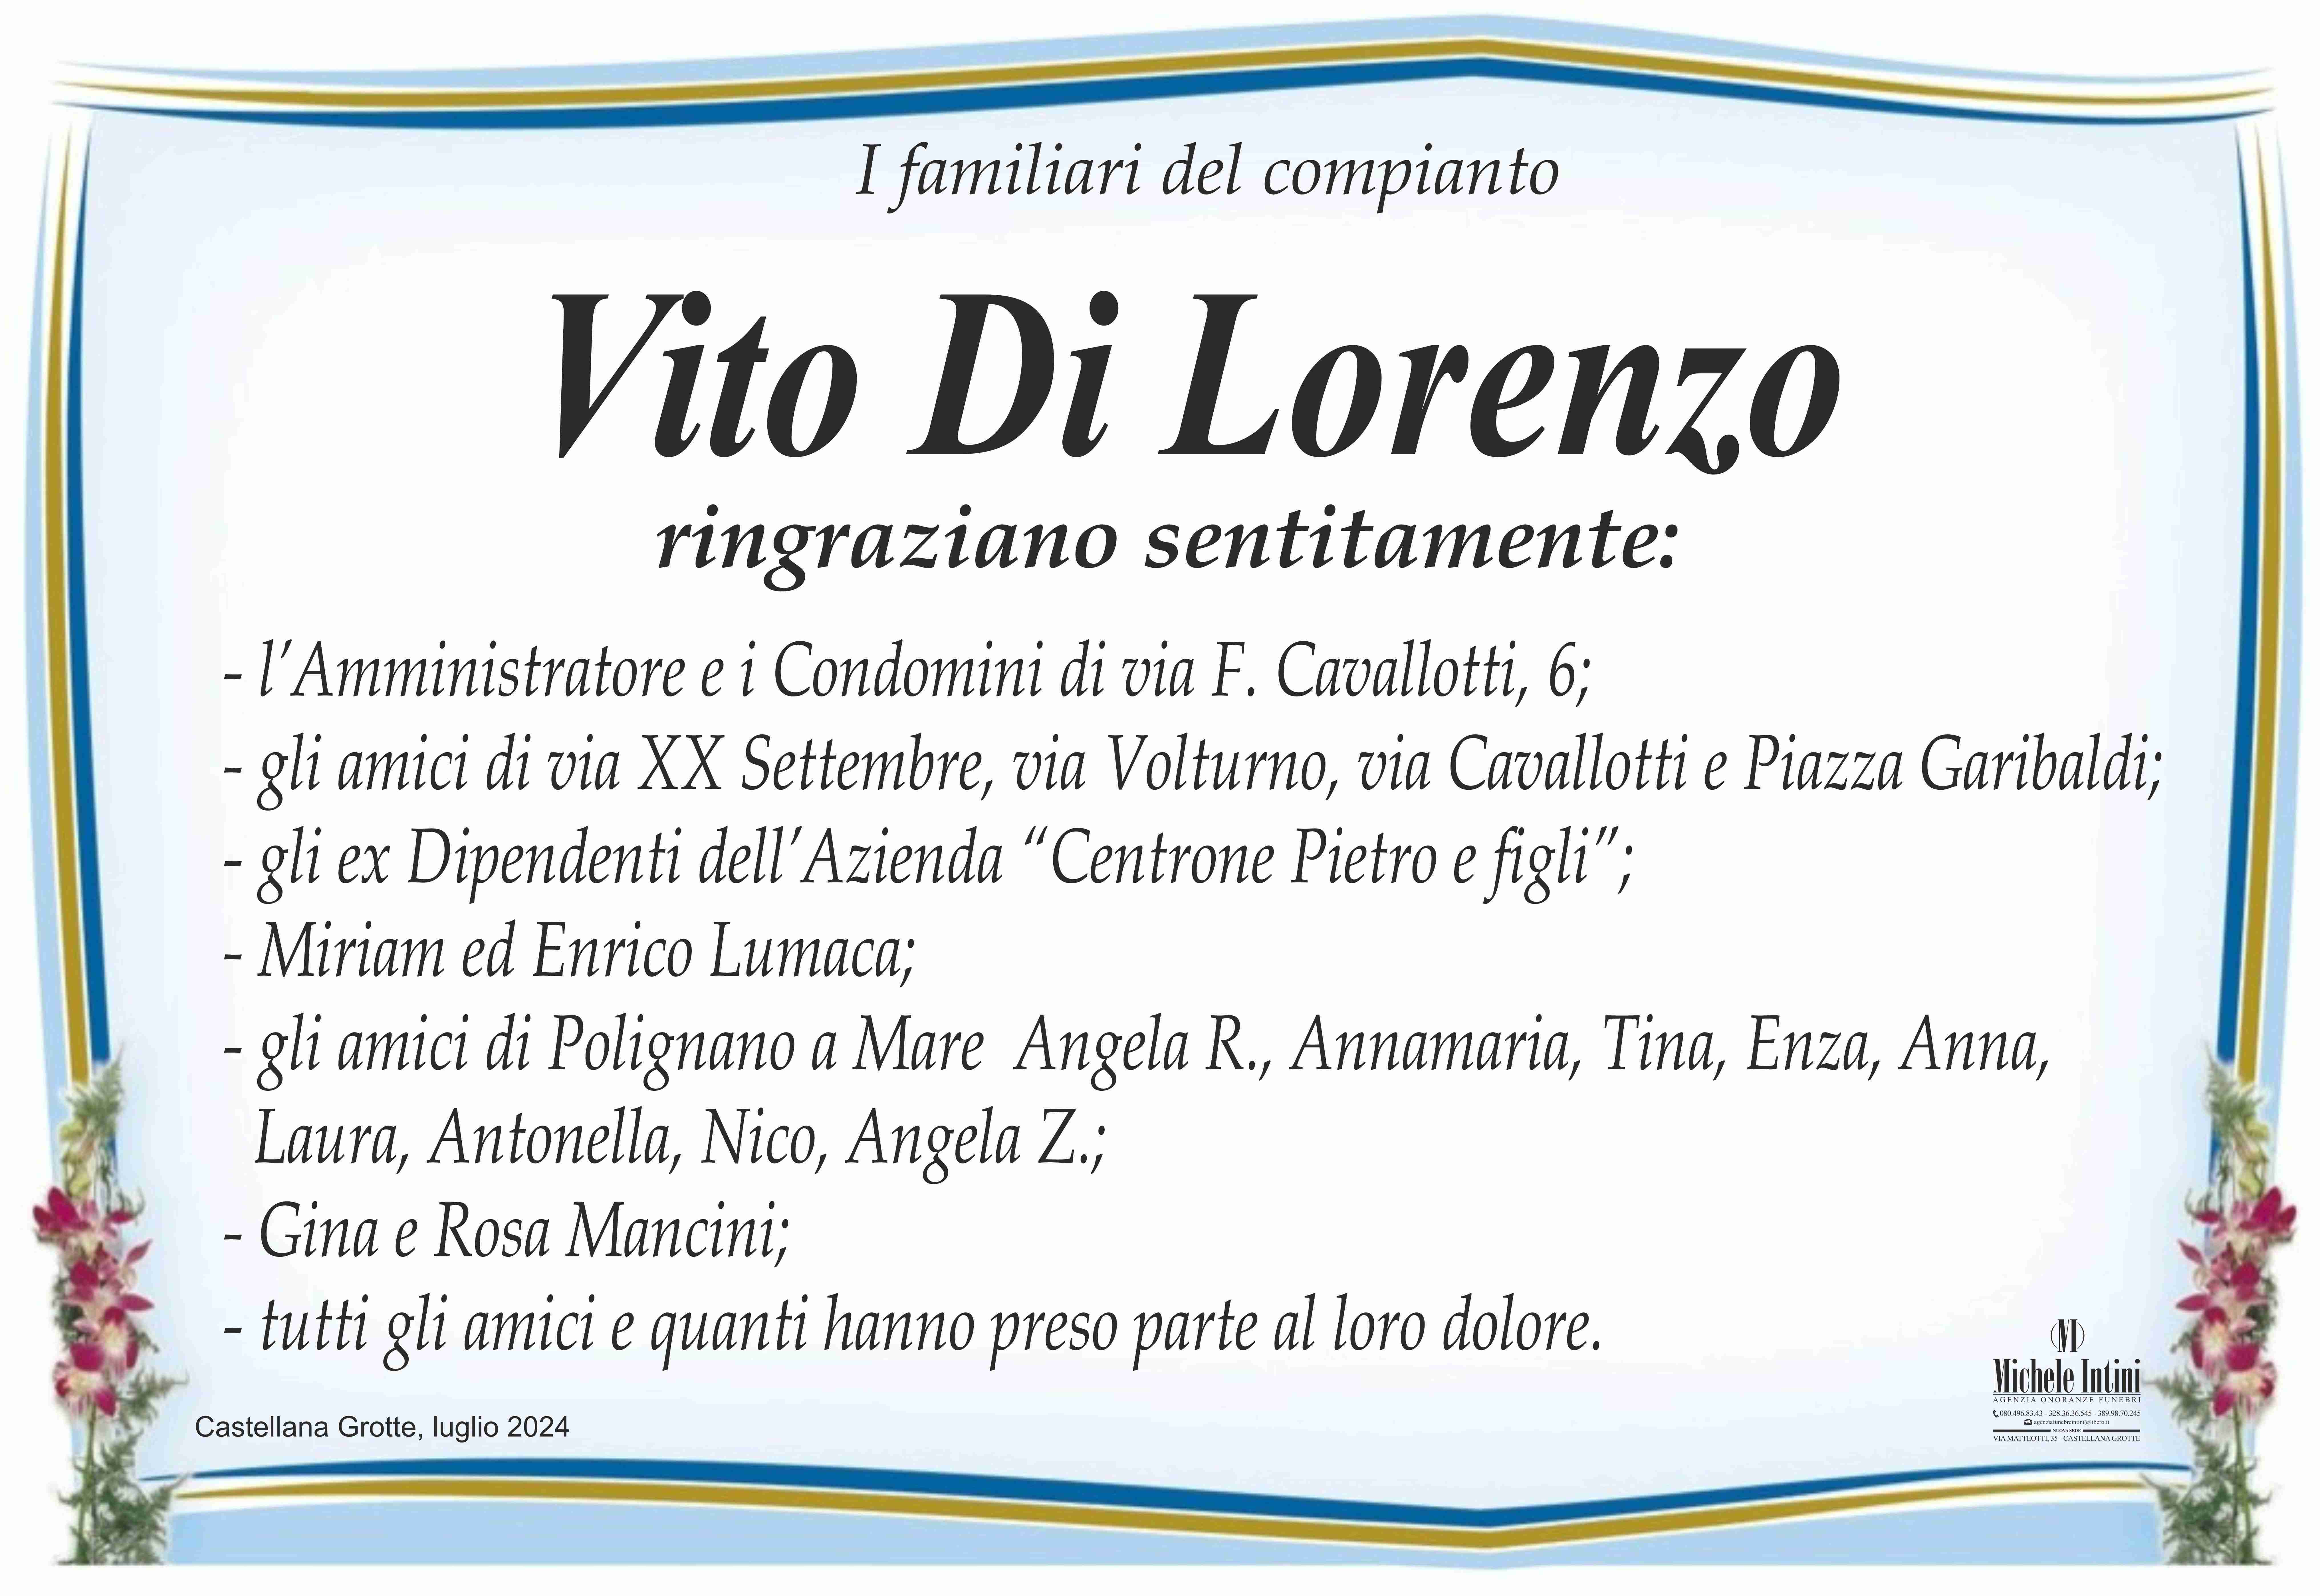 Vito Di Lorenzo